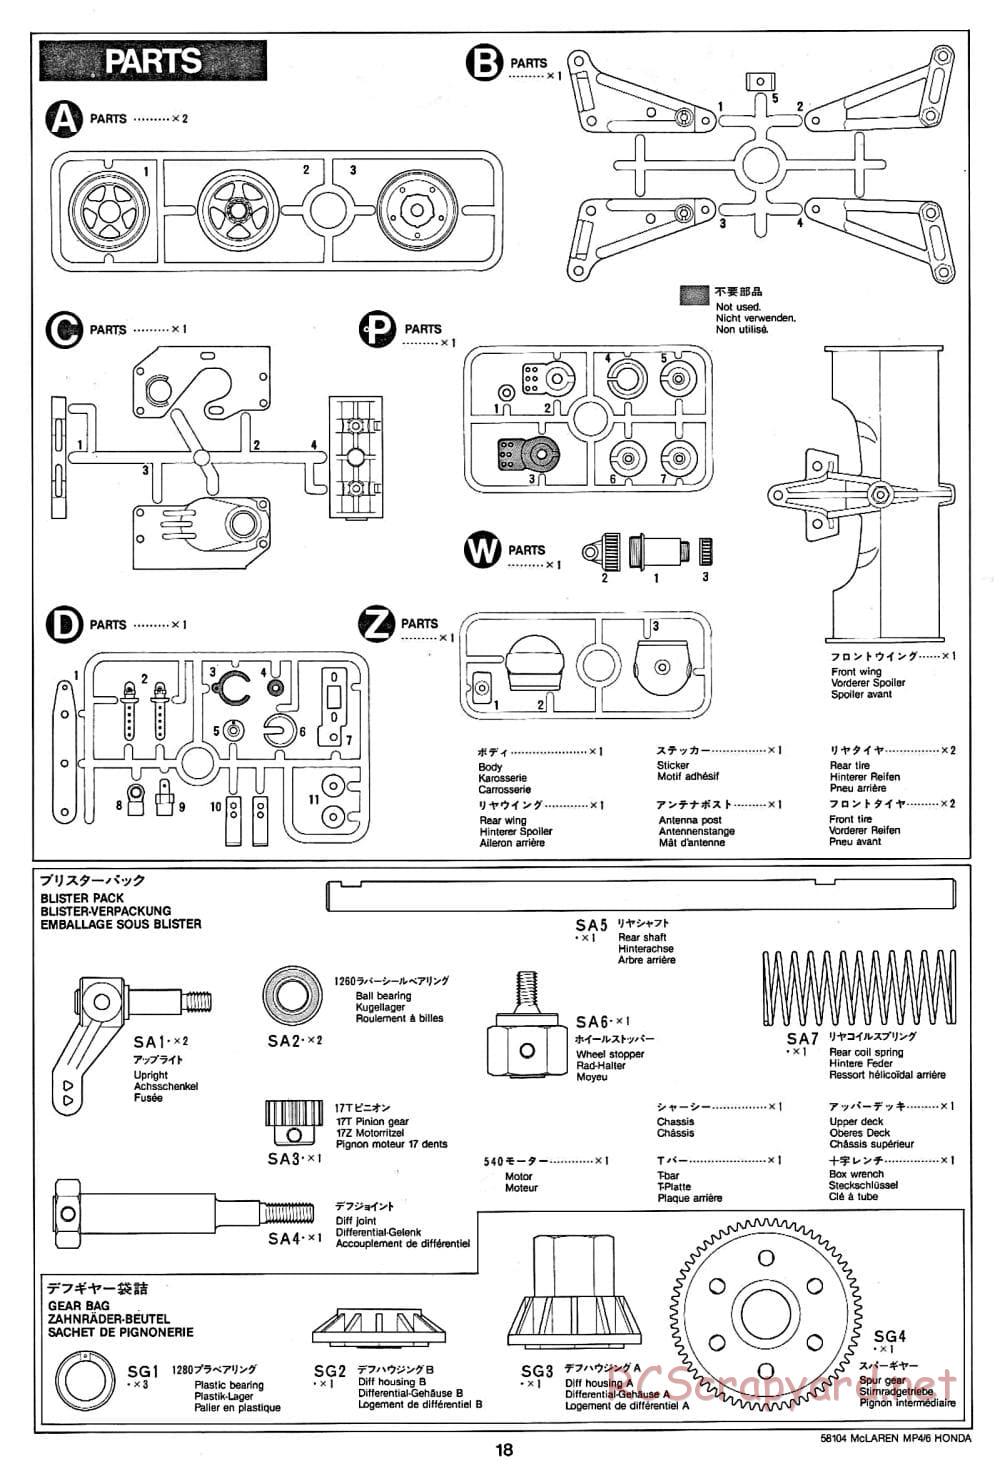 Tamiya - McLaren MP4/6 Honda - F102 Chassis - Manual - Page 18